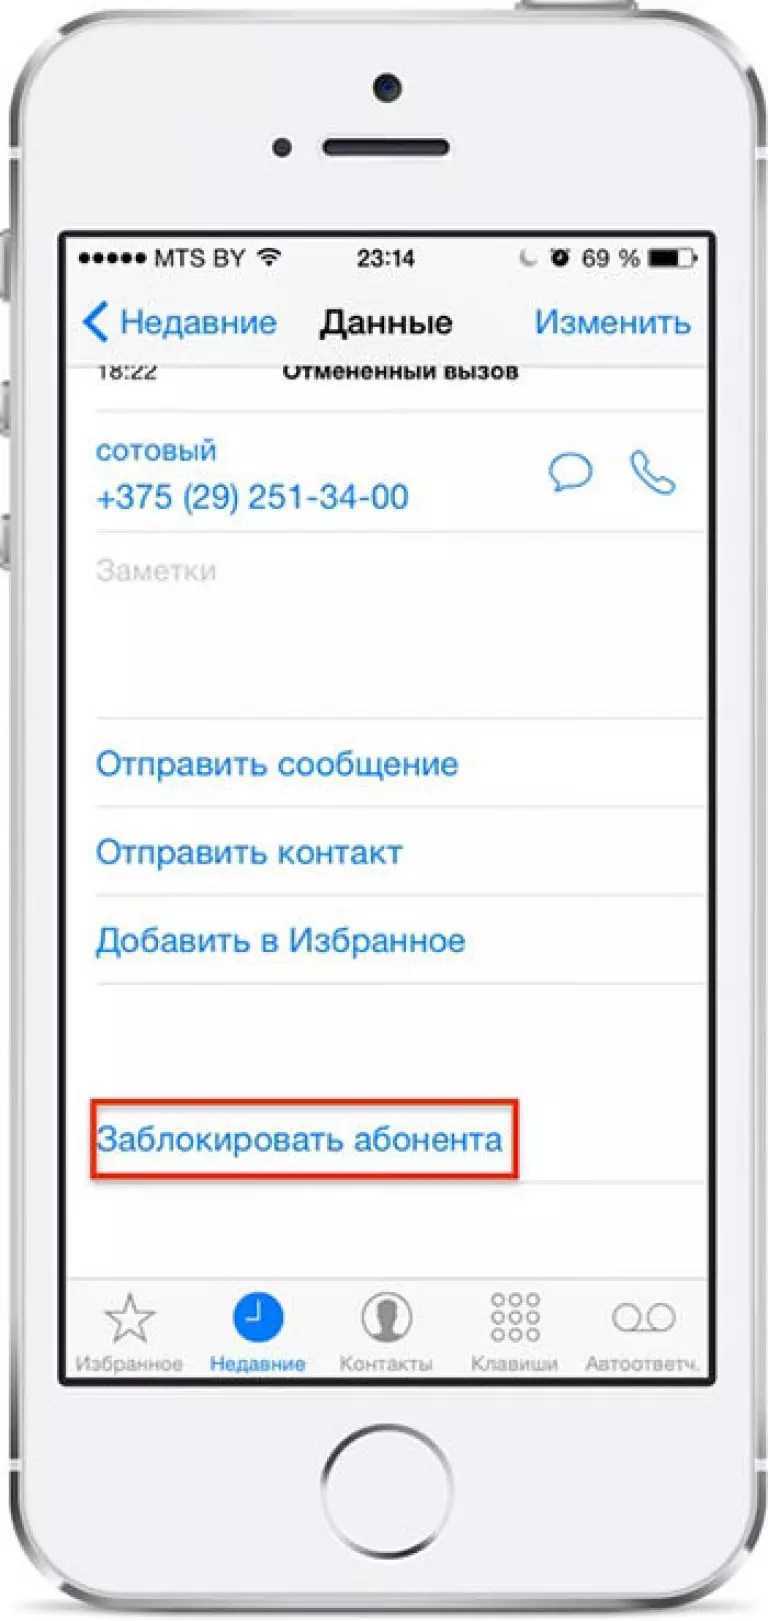 Определитель номеров в приложении «яндекс» на android и iphone